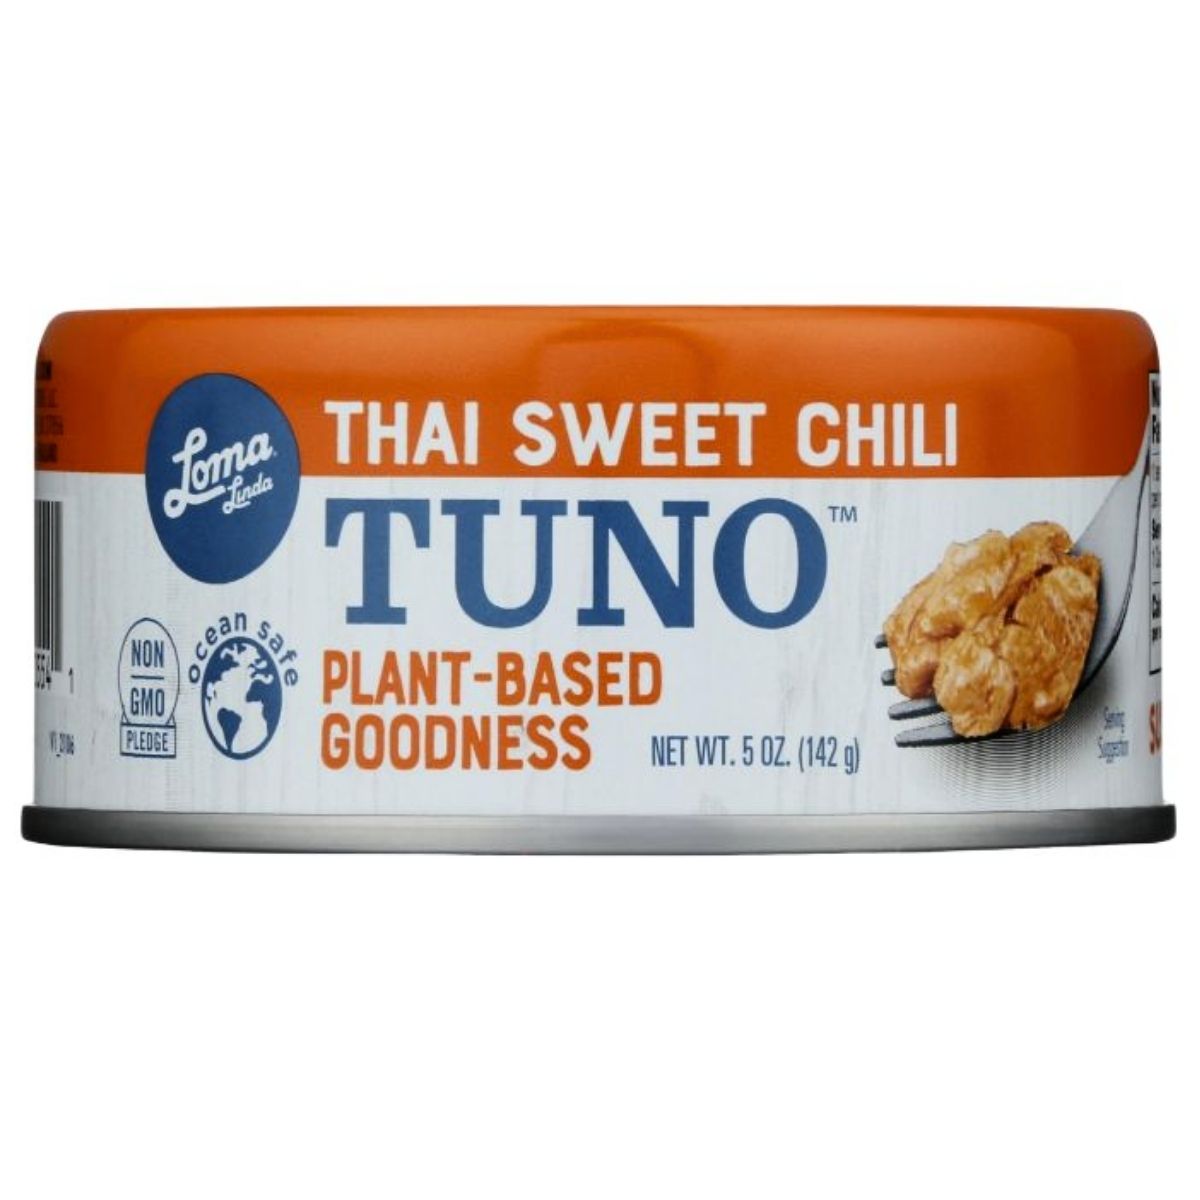 Loma Linda Tuno Thai Sweet Chili Plant-Based Tuna - 5 oz.